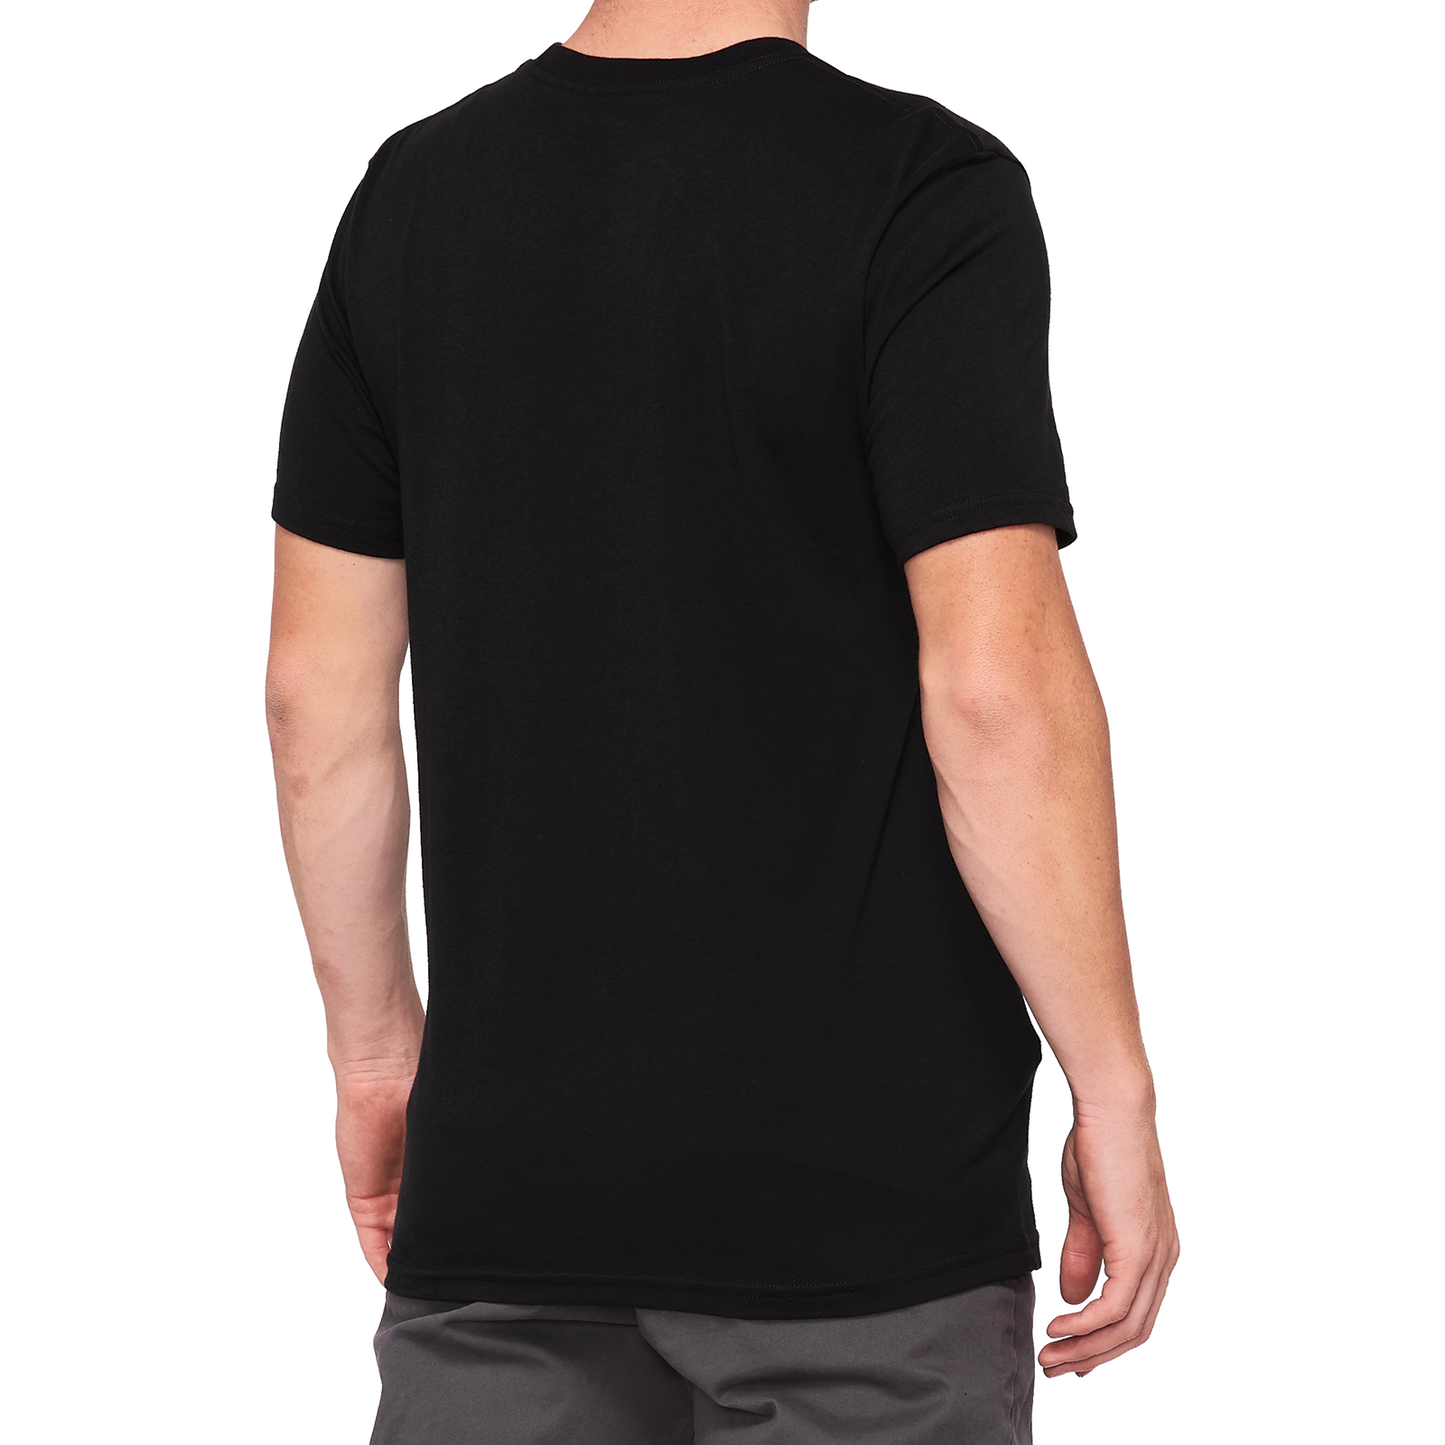 100% 100% Icon T-Shirt - Black - XL 20000-00023